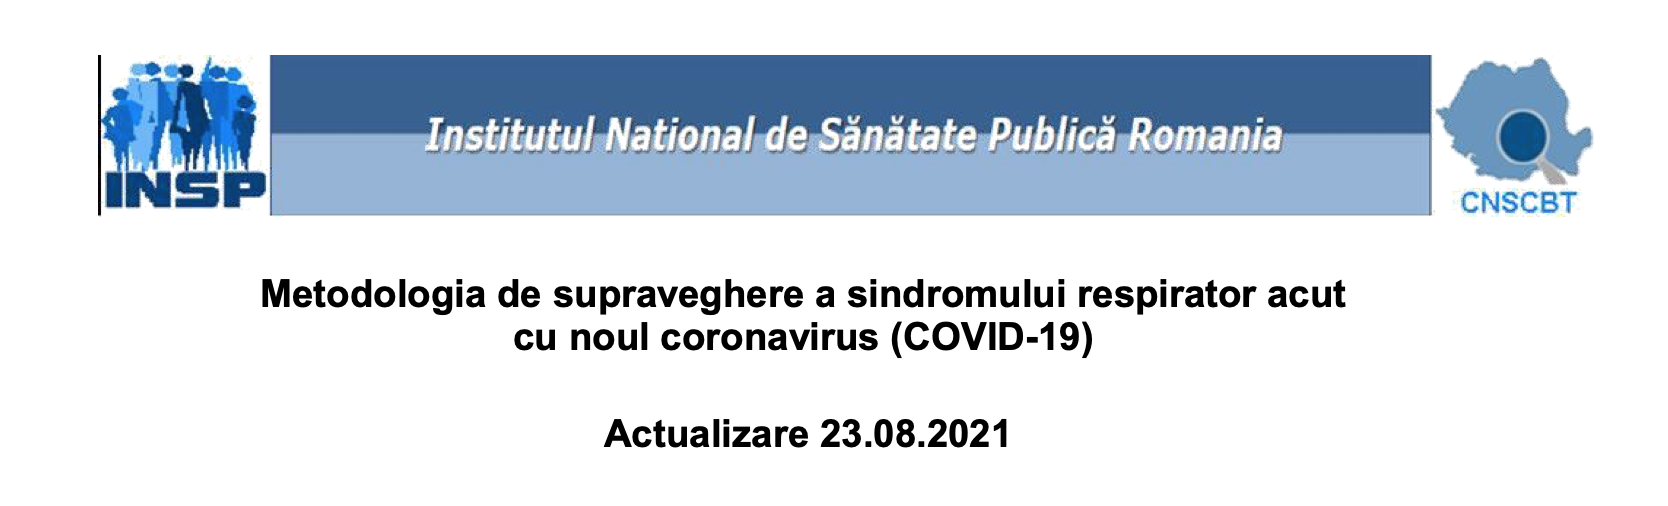 INSP permite cu acte ca numarul deceselor de Covid sa fie umflat! Institutul incurajeaza ca medicii sa infecteze pacientii cronici cu Sars-Cov-2